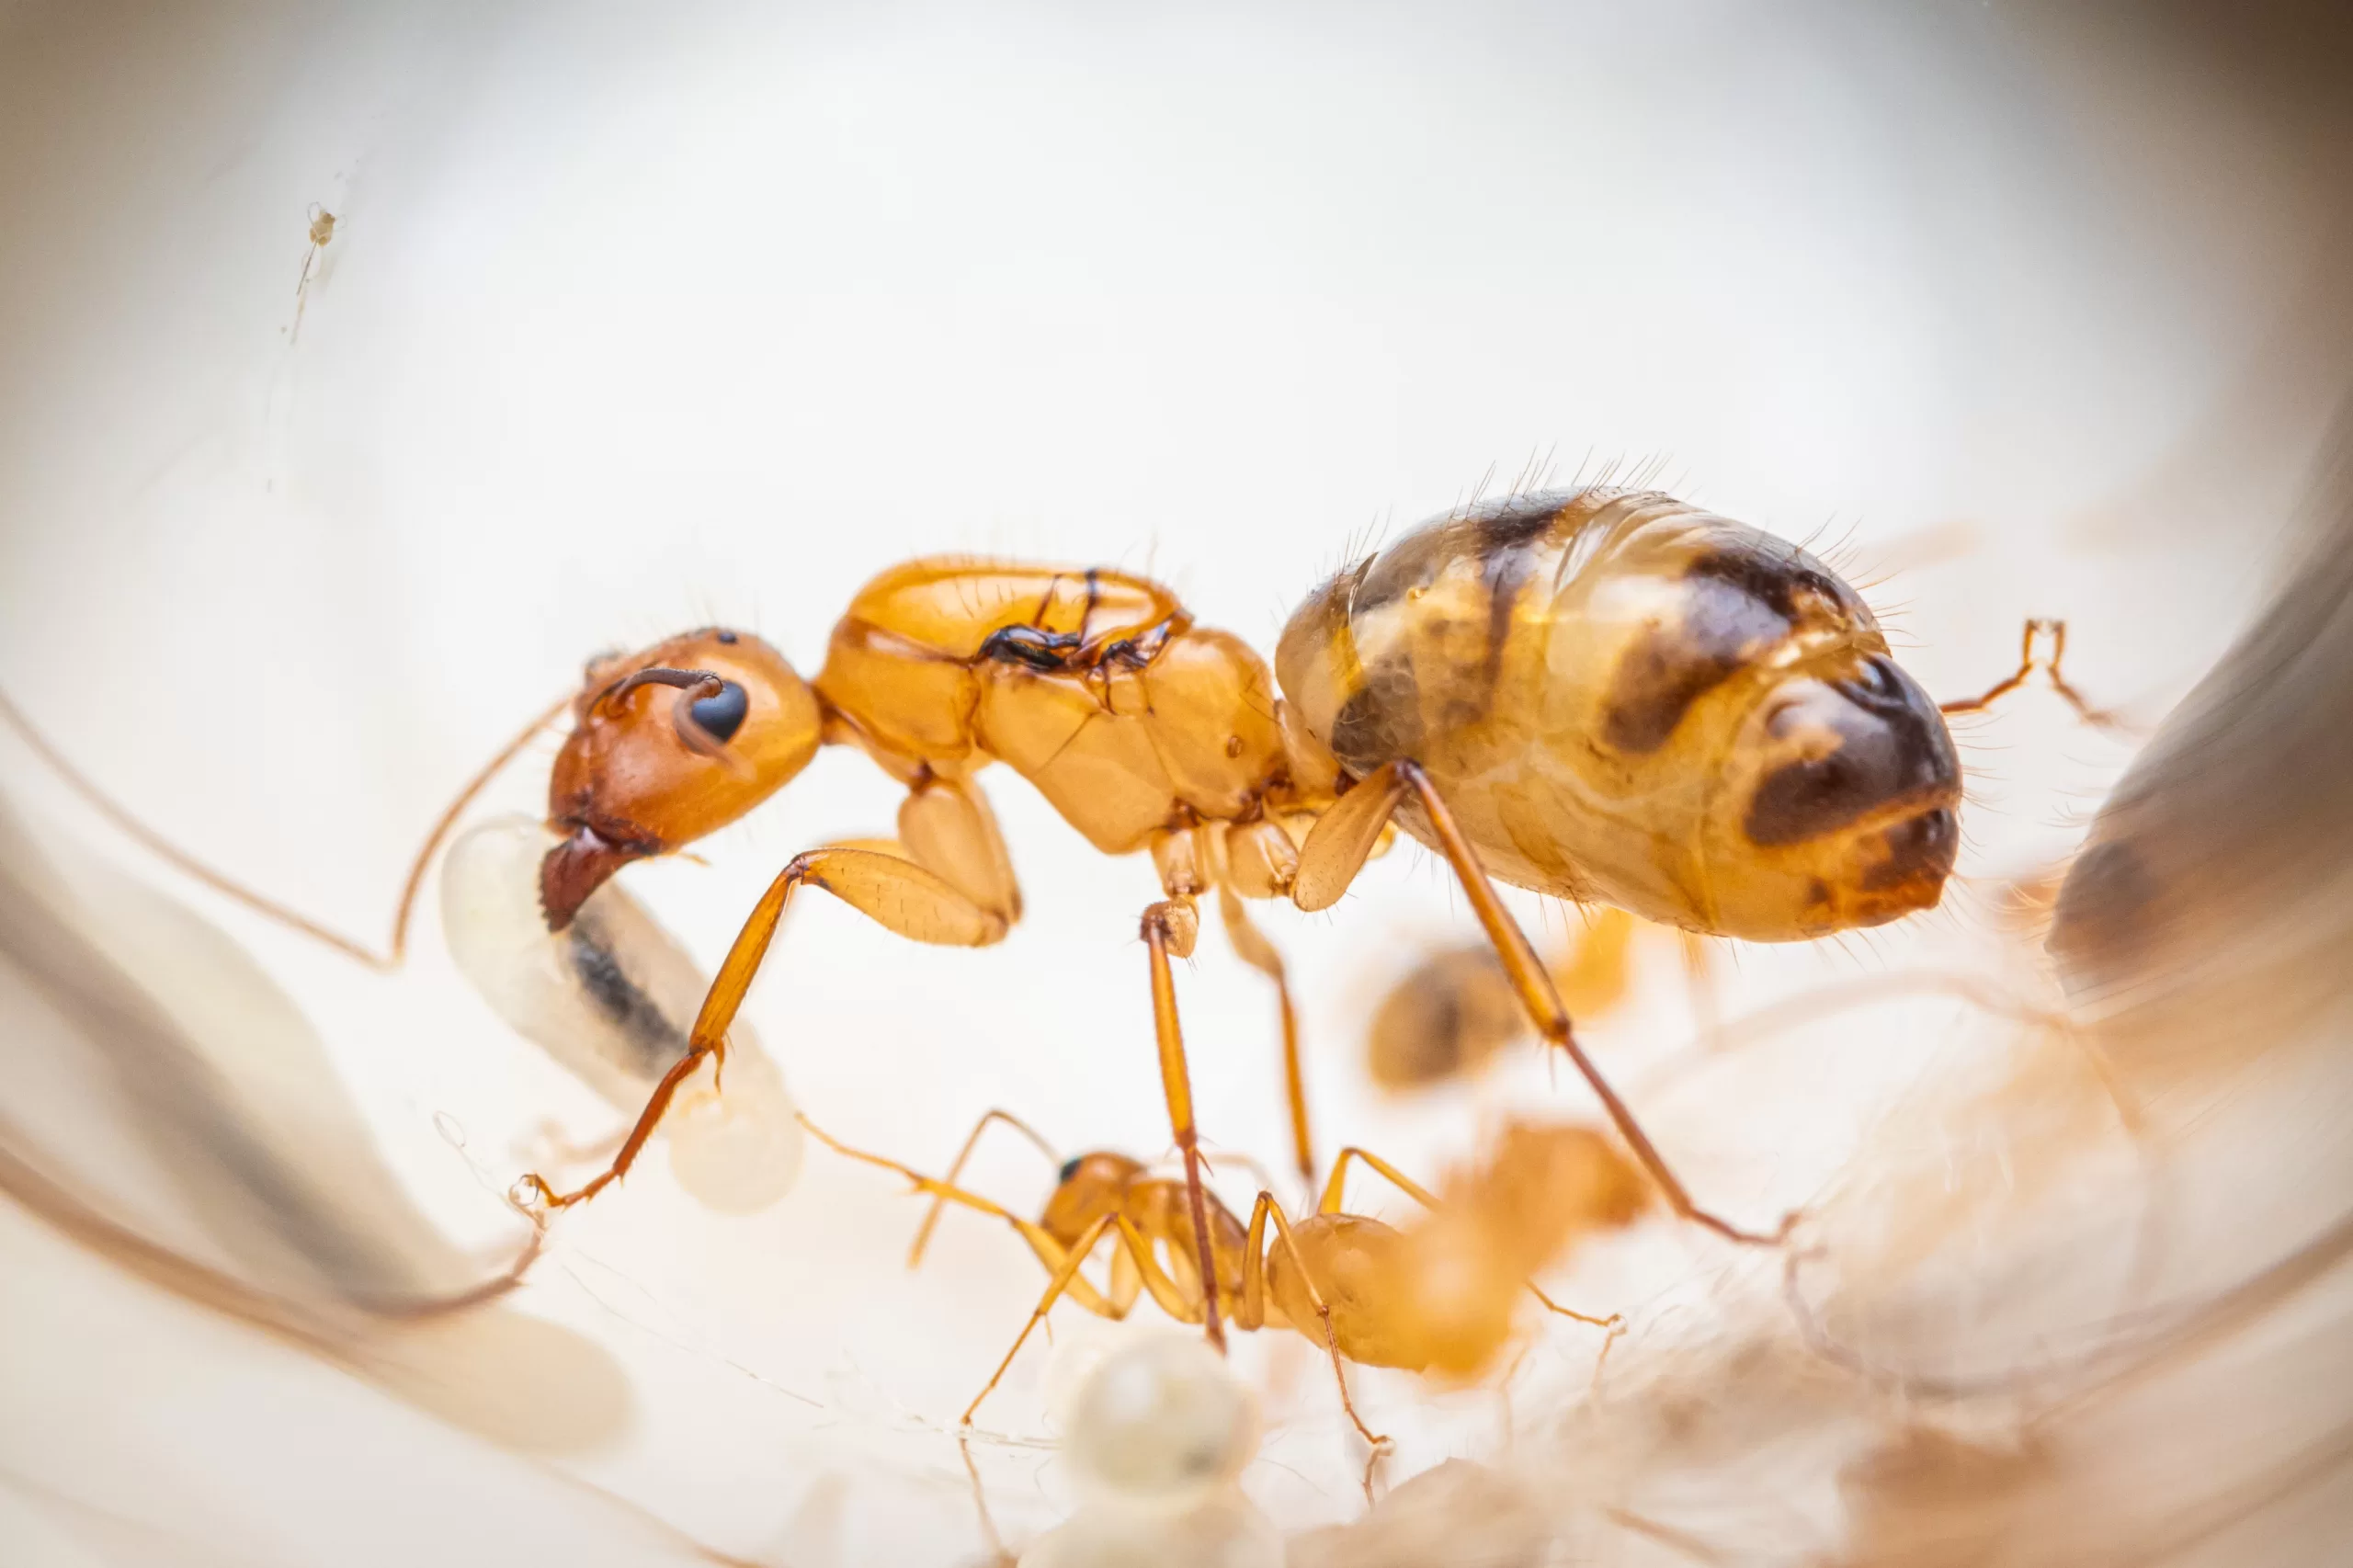 A Camponotus fragilis queen.